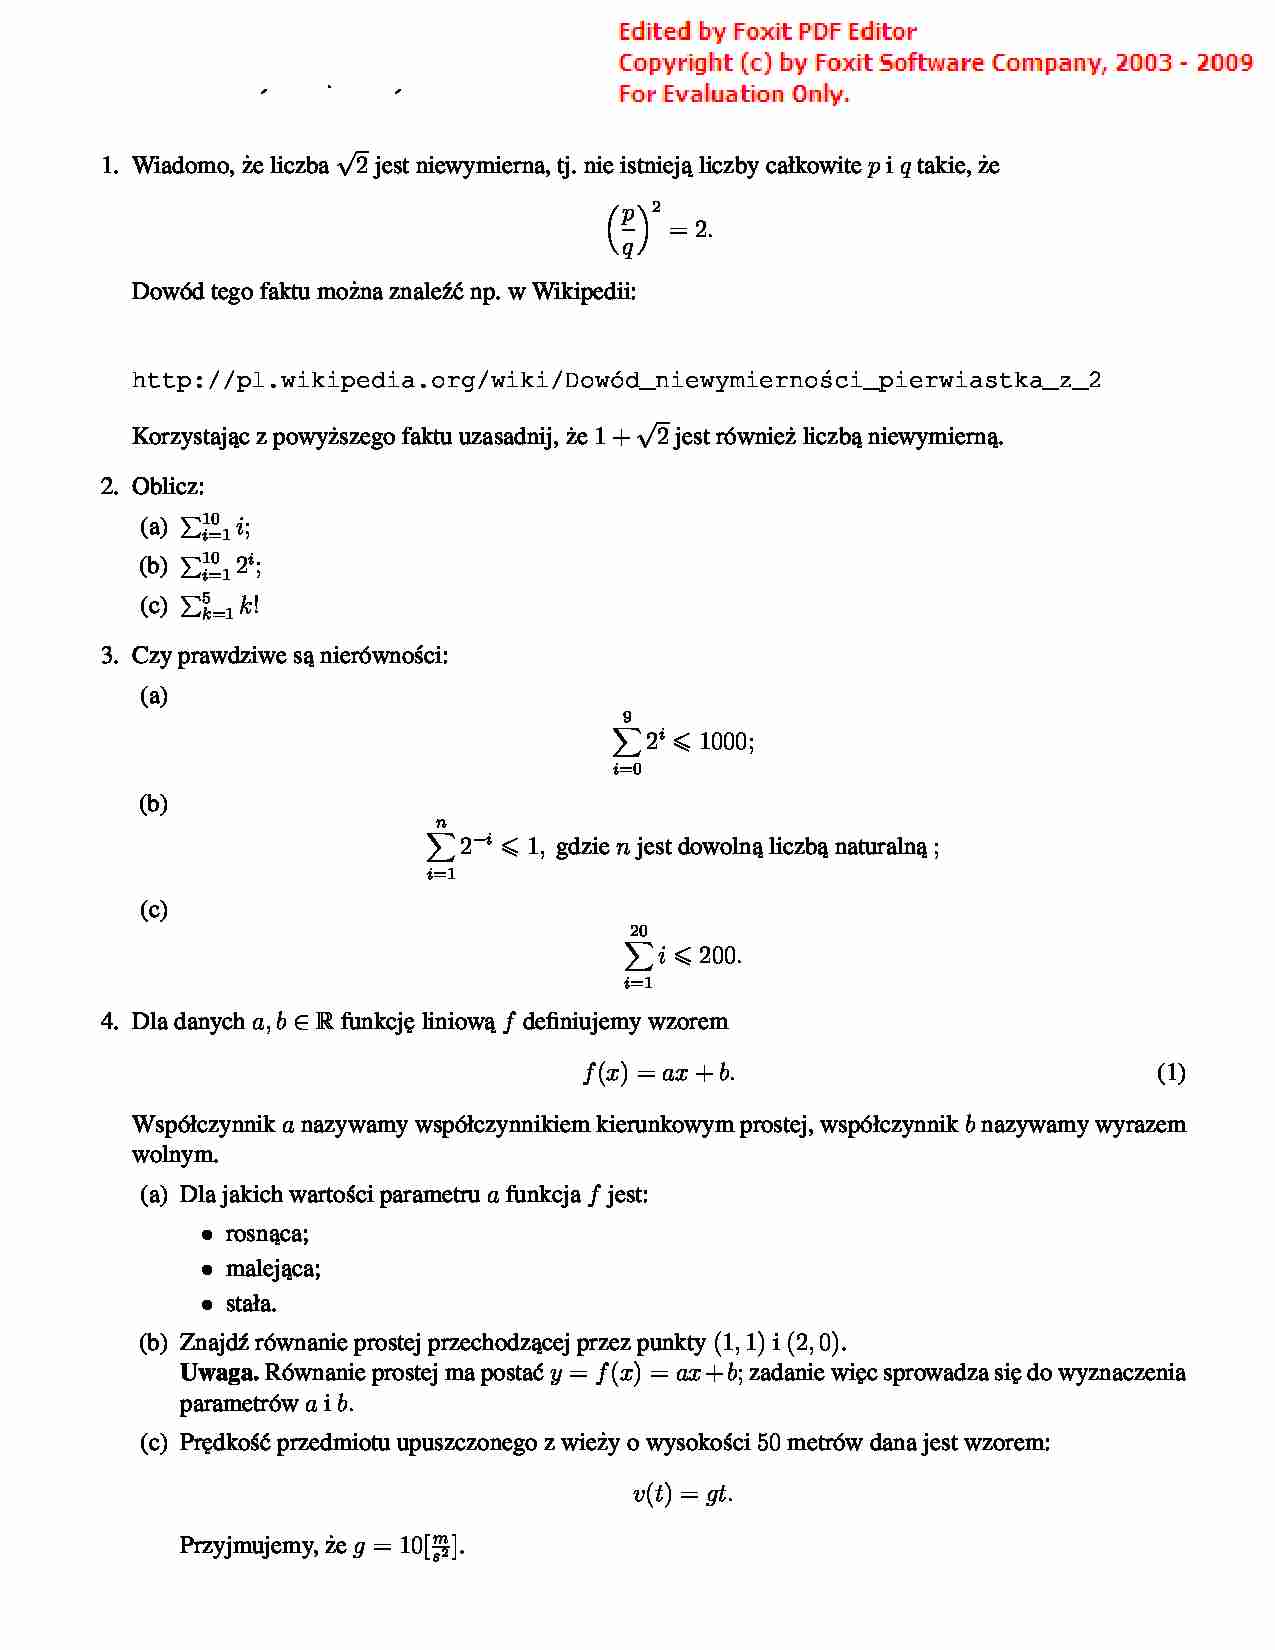 Listy zadań z matematyki dla zootechniki - strona 1